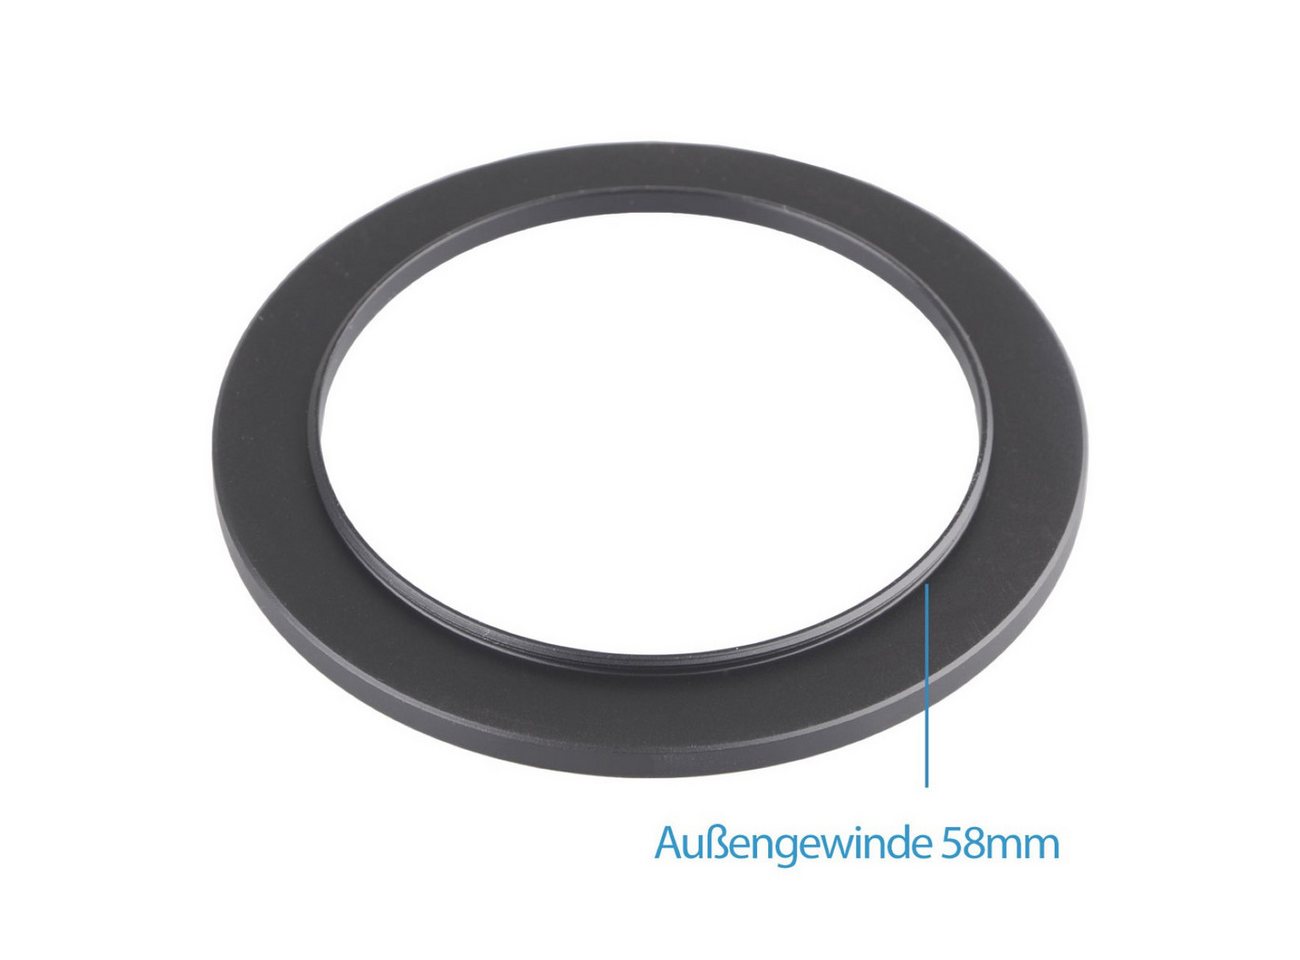 ayex Step-Up Ring 58-62mm Reduzierring Adapterring für alle Hersteller Foto-Filter-Sets von ayex